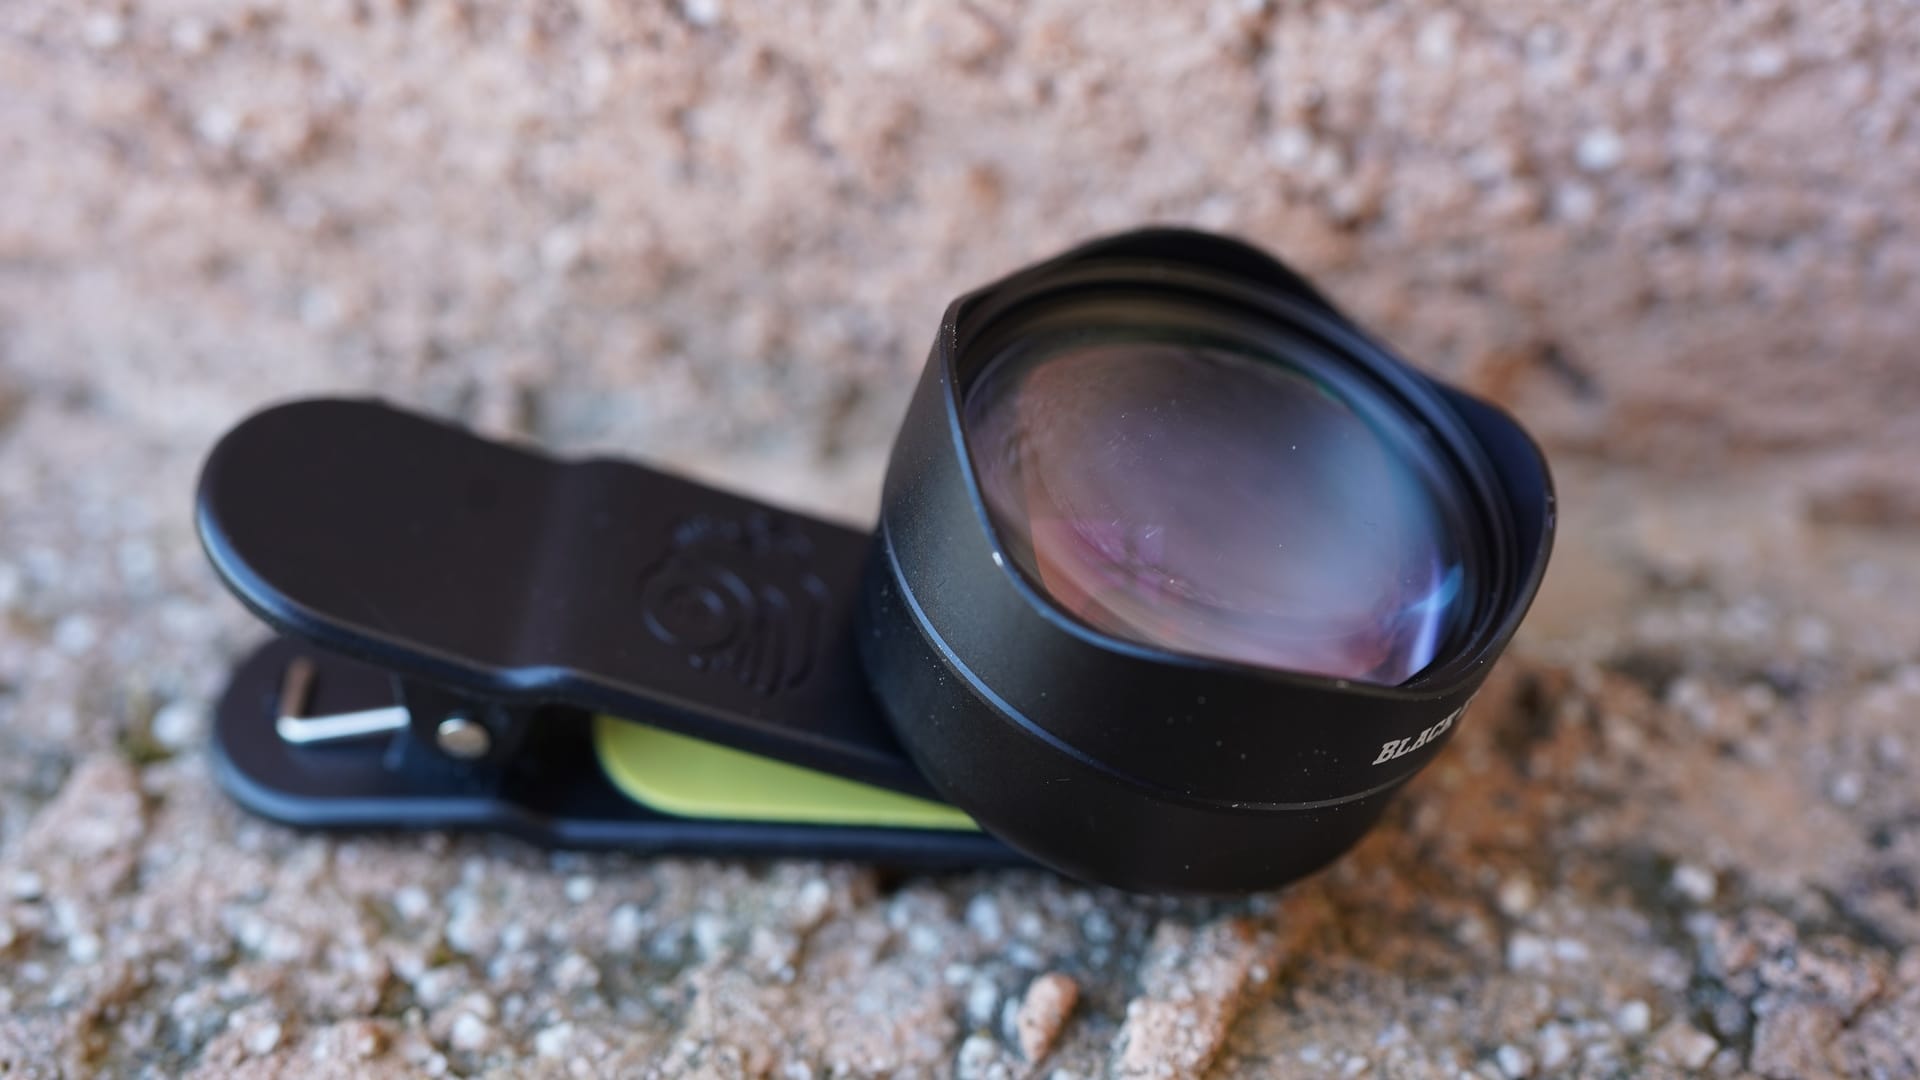 Black Eye Pro Kit G4 review telephoto profile